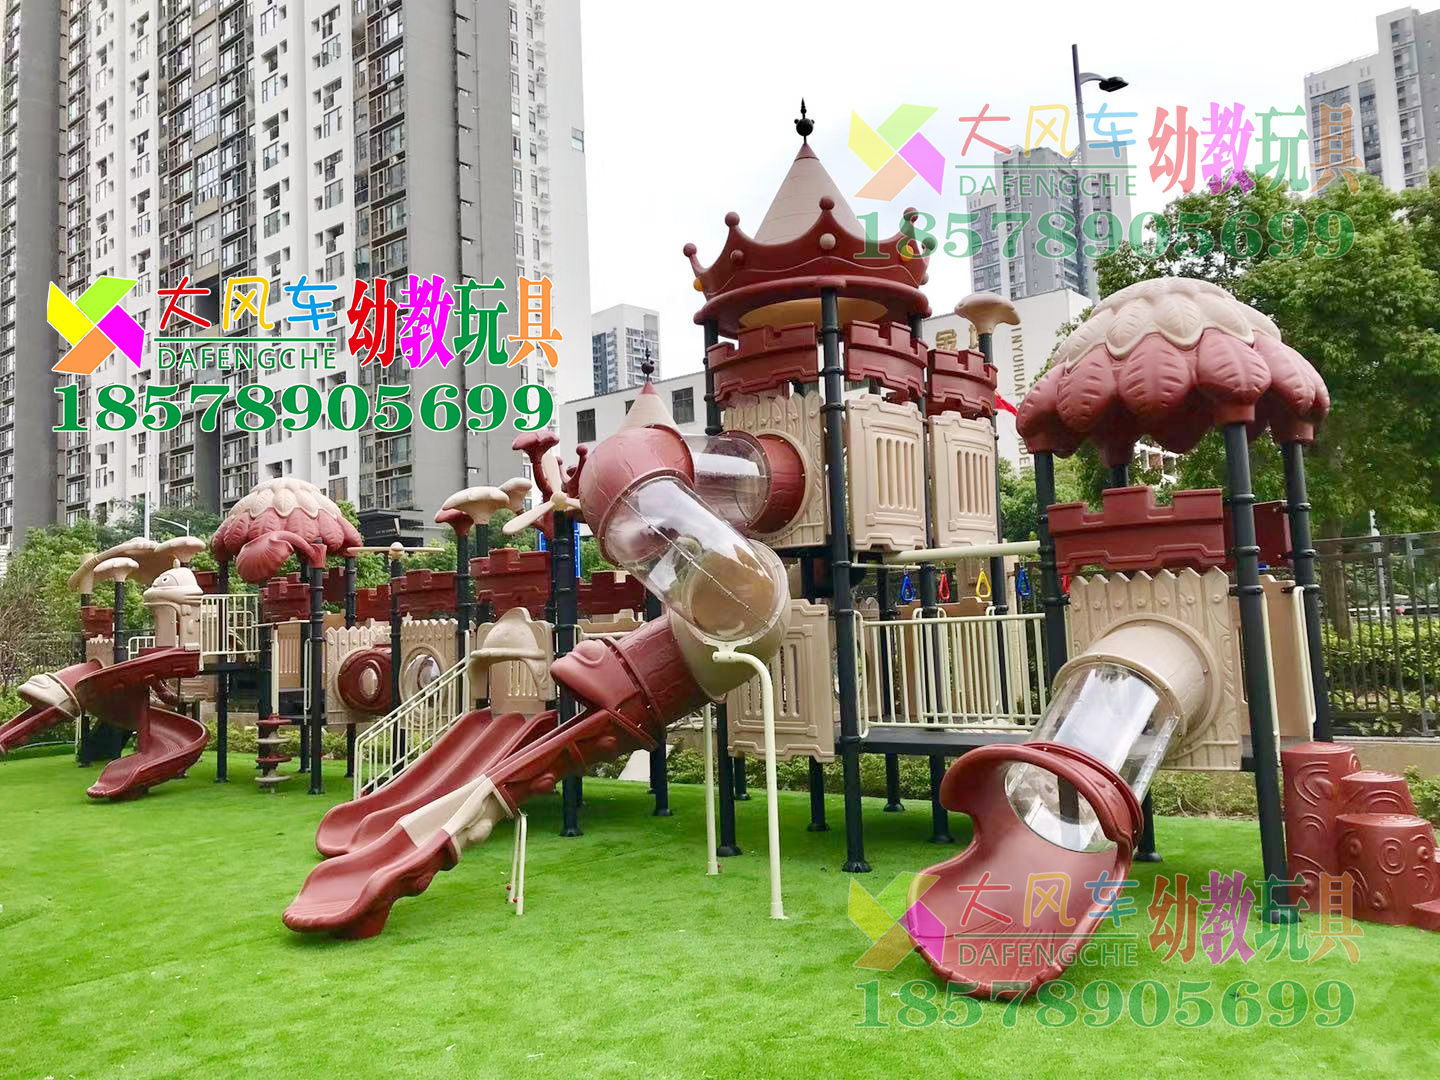 承接深圳幼儿园设备建设